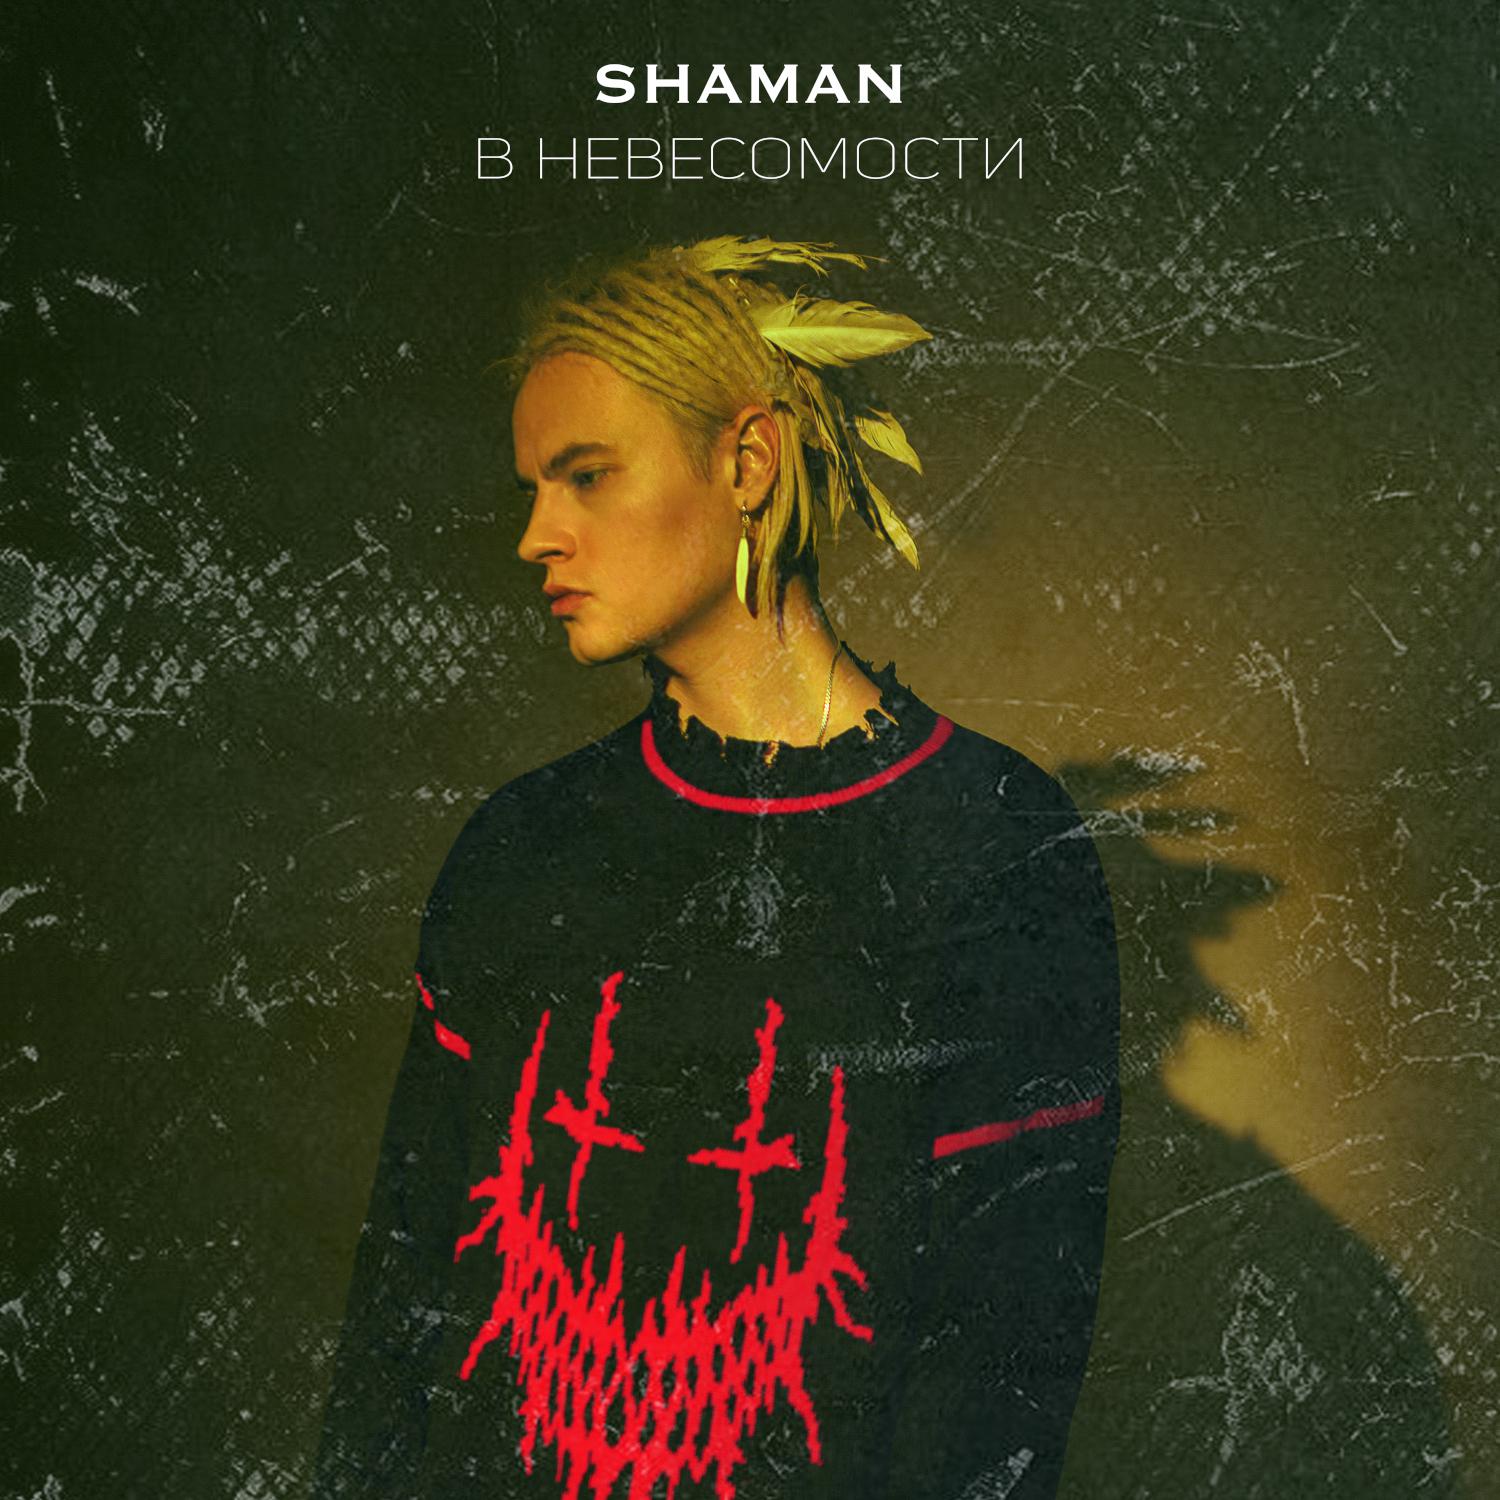 Песня там где поет душа шаман слушать. Shaman (певец). Шаман певец обложка. В невесомости Shaman. В невесомости Shaman обложка.